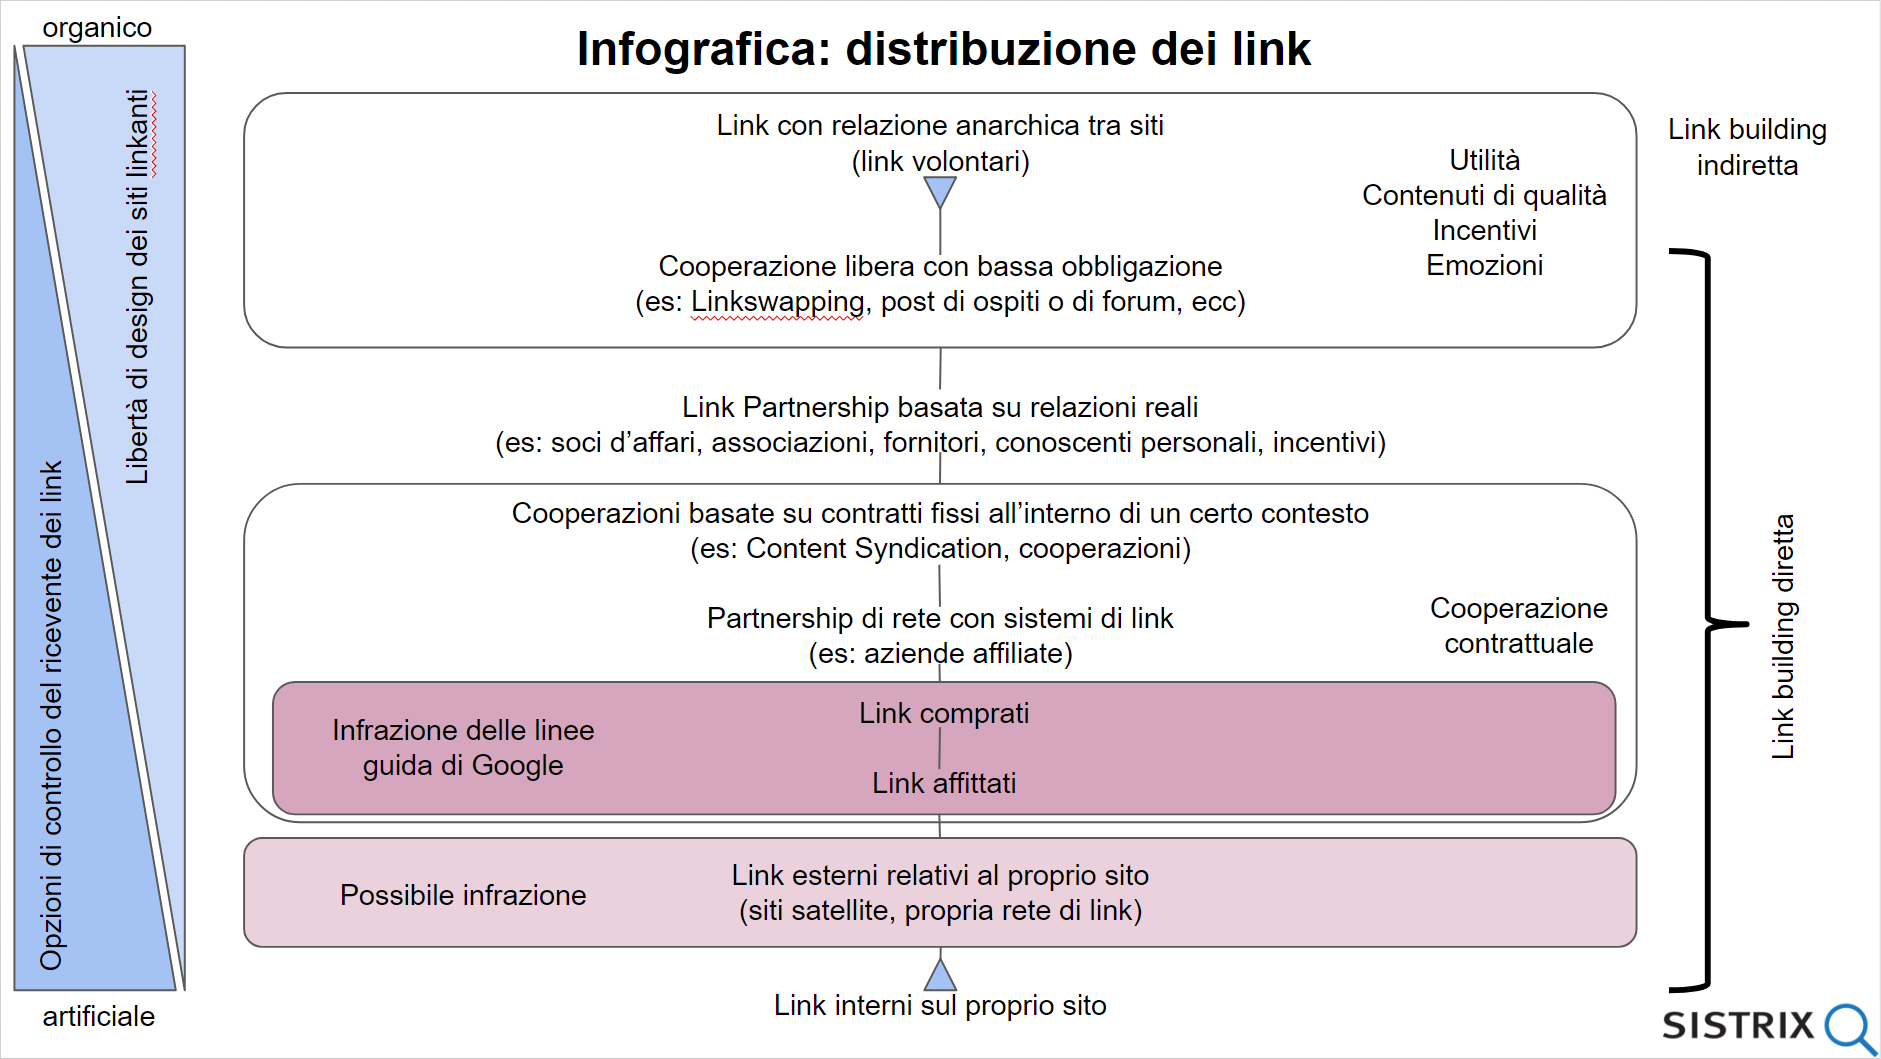 Infografica di SISTRIX relativa alla distribuzione di link